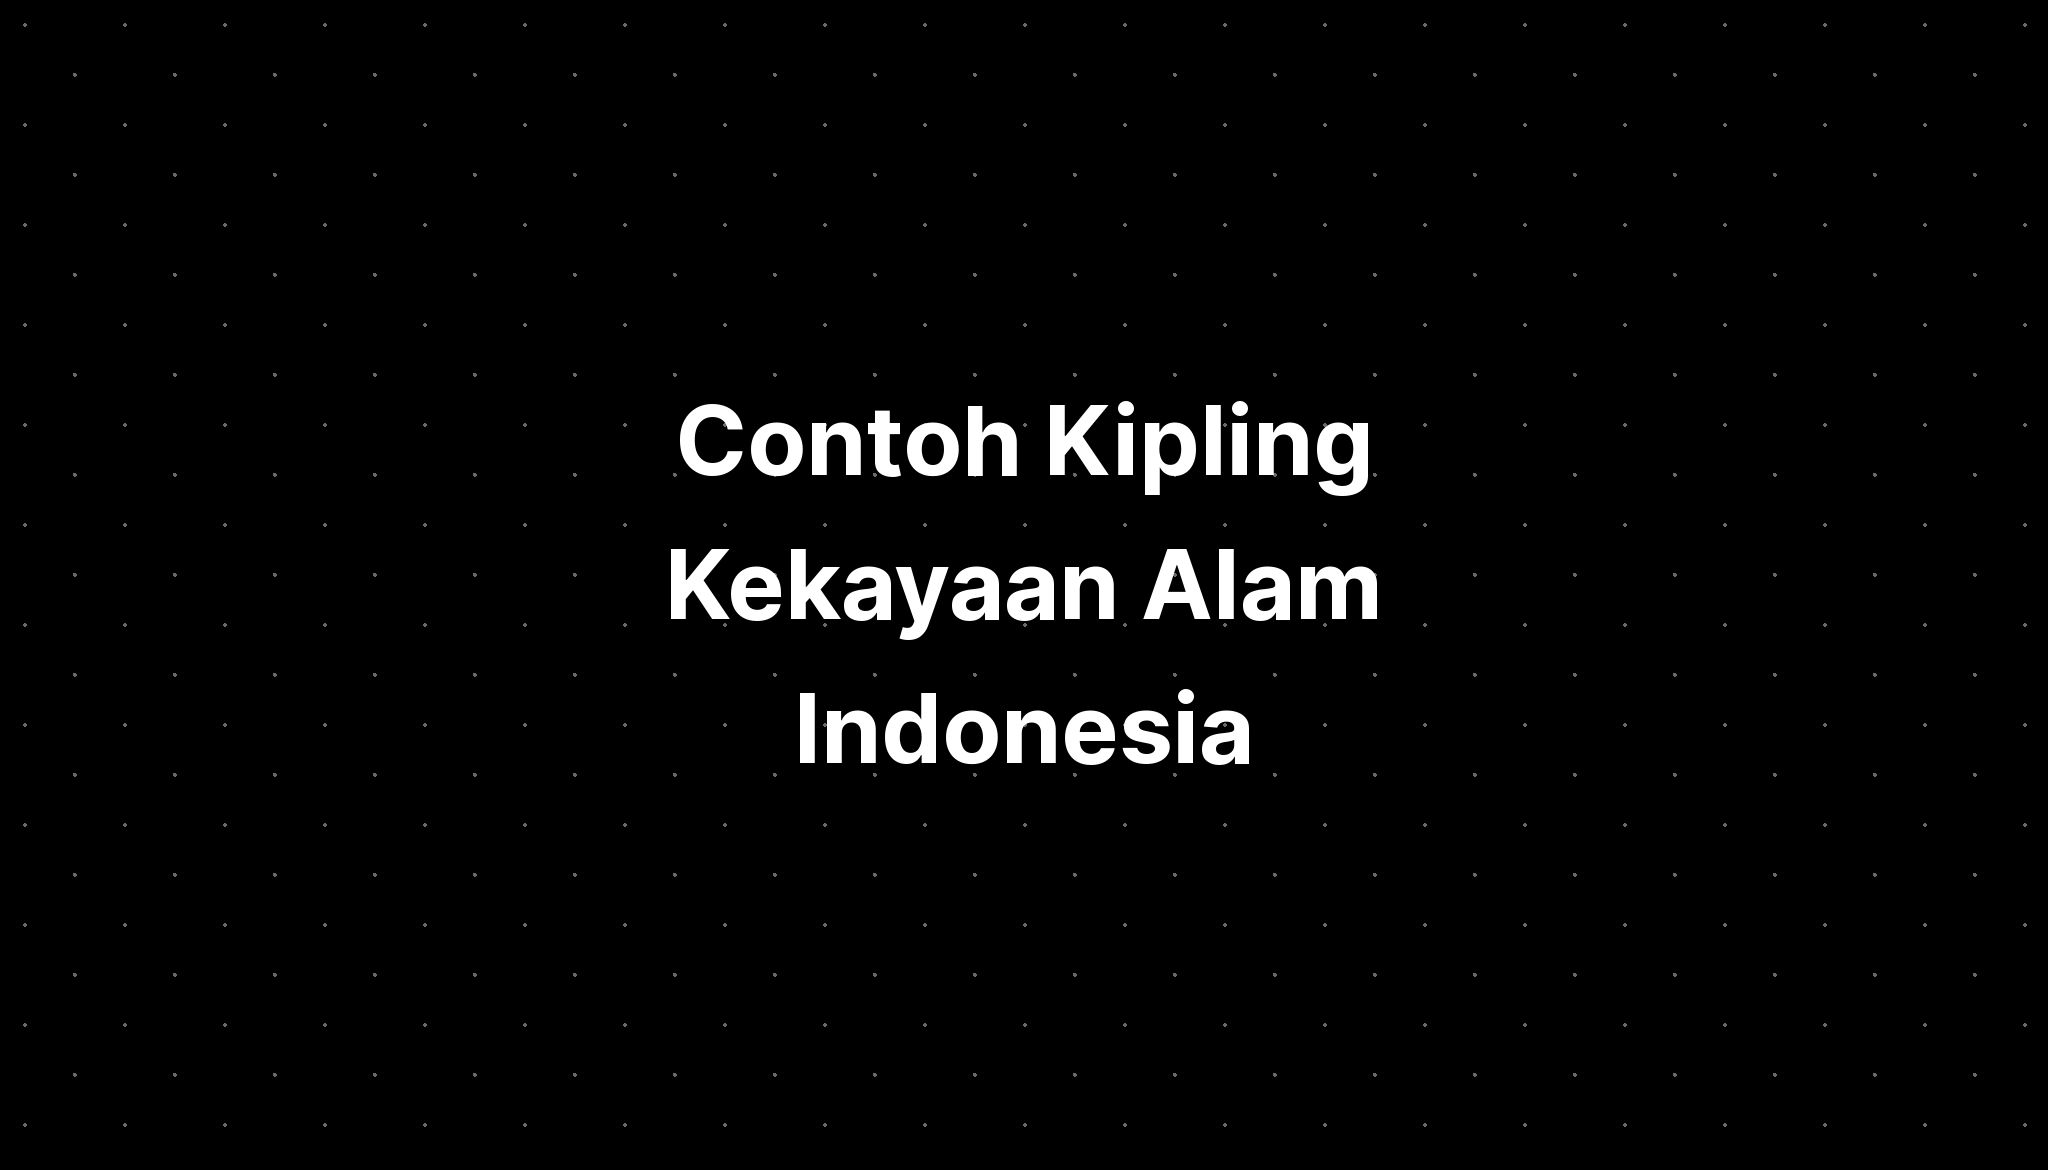 Contoh Kipling Kekayaan Alam Indonesia Beserta Gambarnya Bencana - IMAGESEE